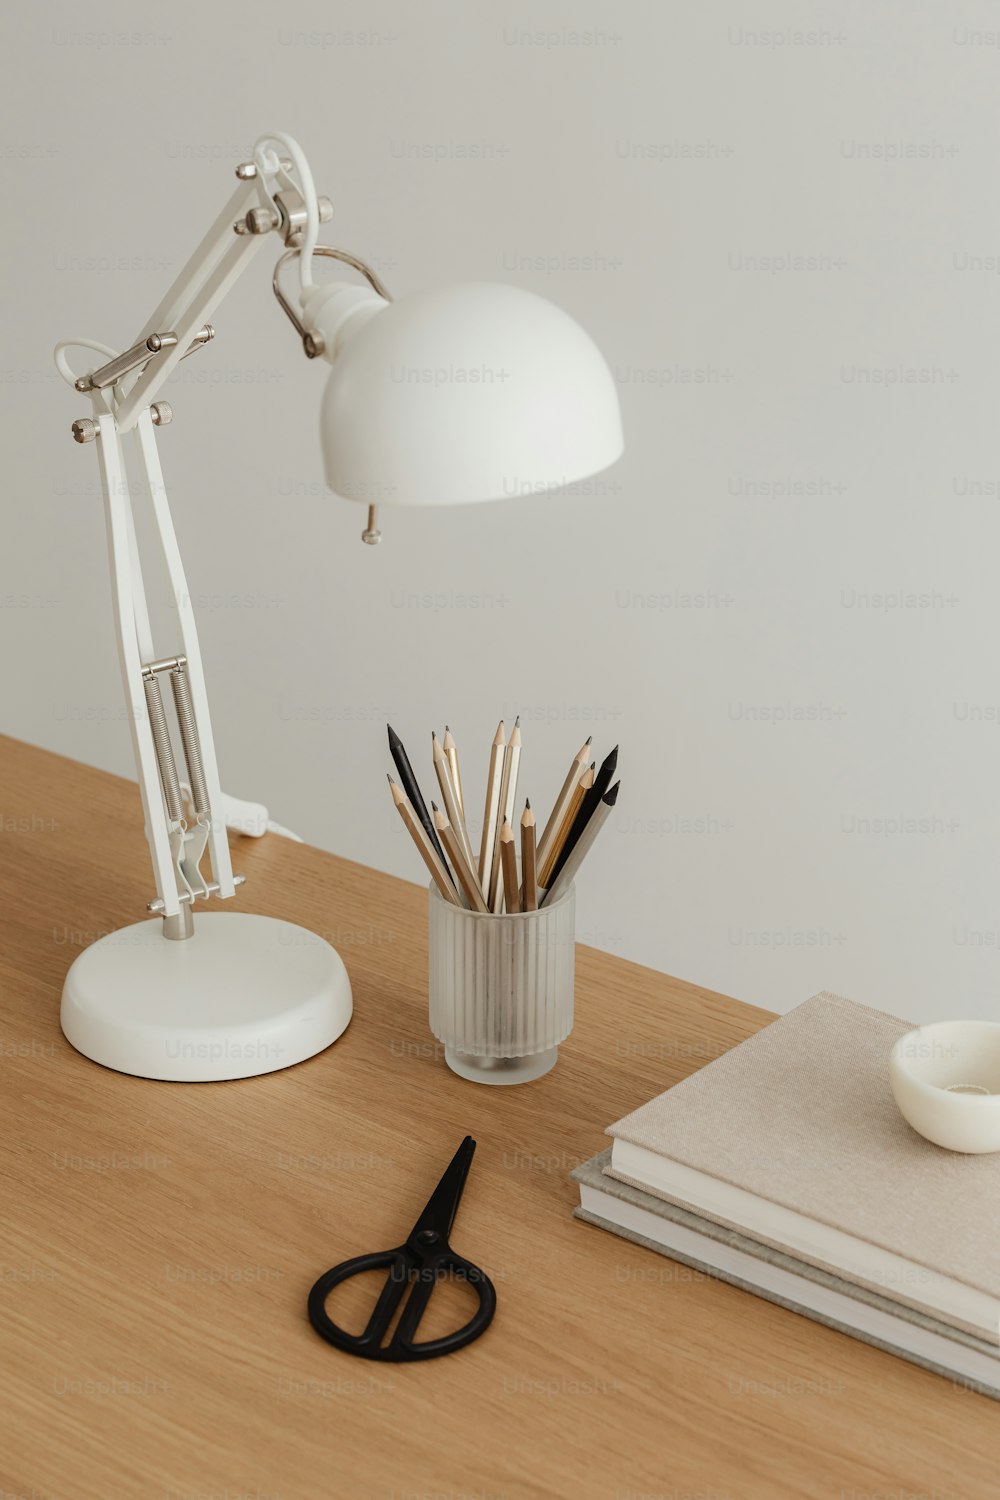 램프, 연필, 컵이 있는 책상